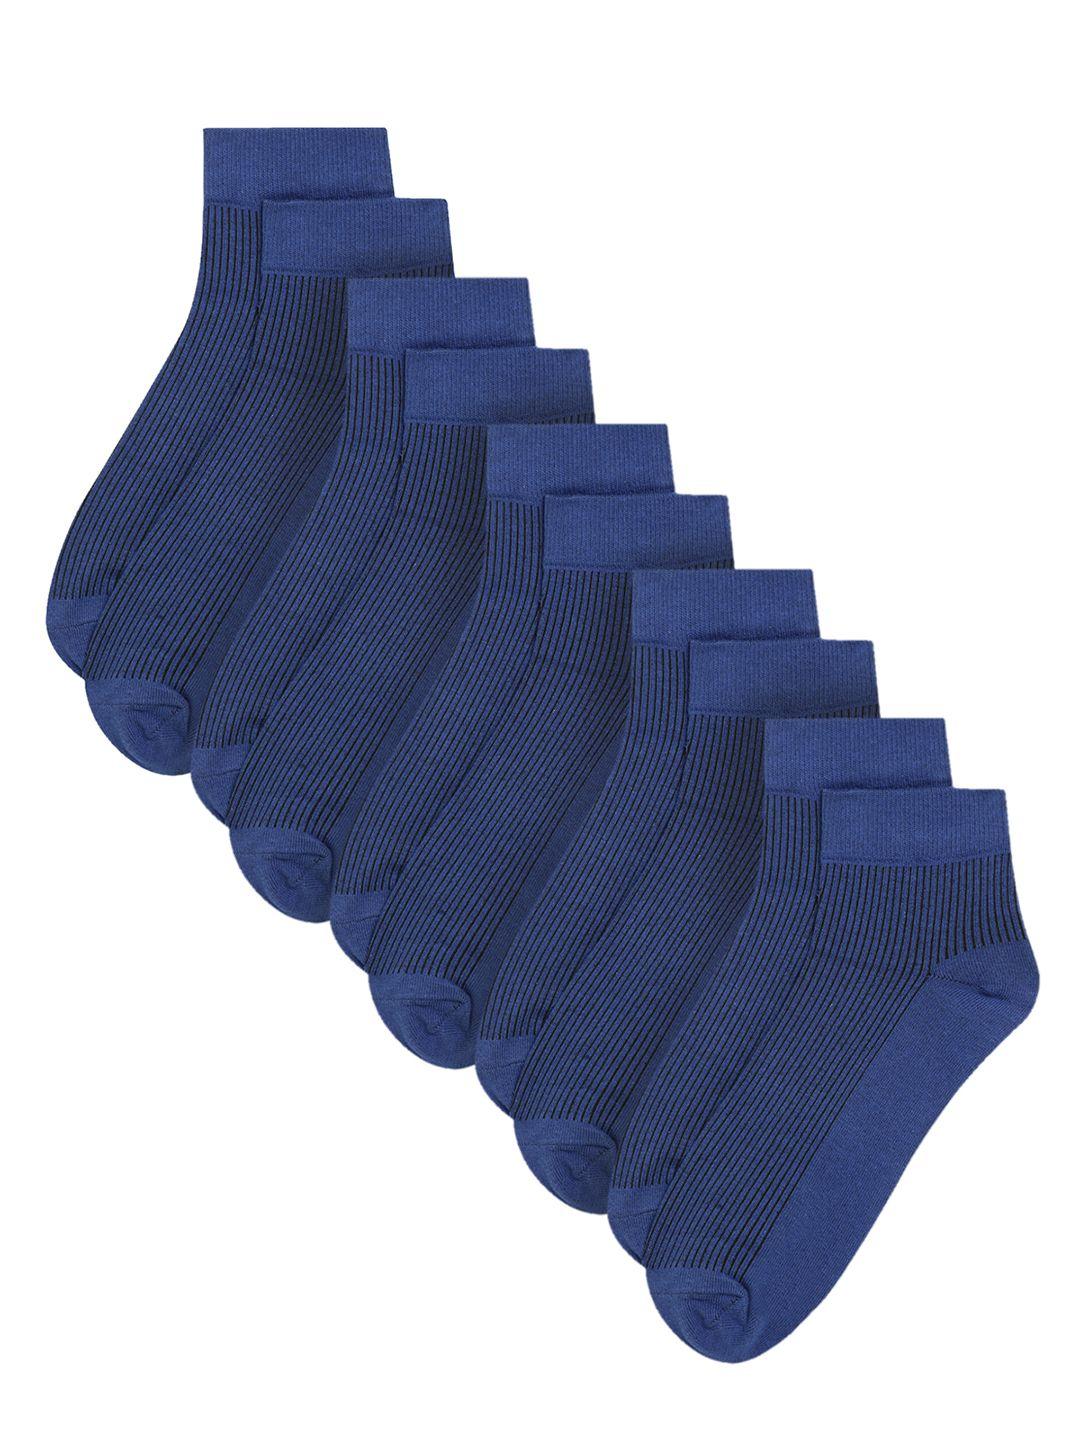 cantabil-men-set-of-5-blue-ankle-length-socks